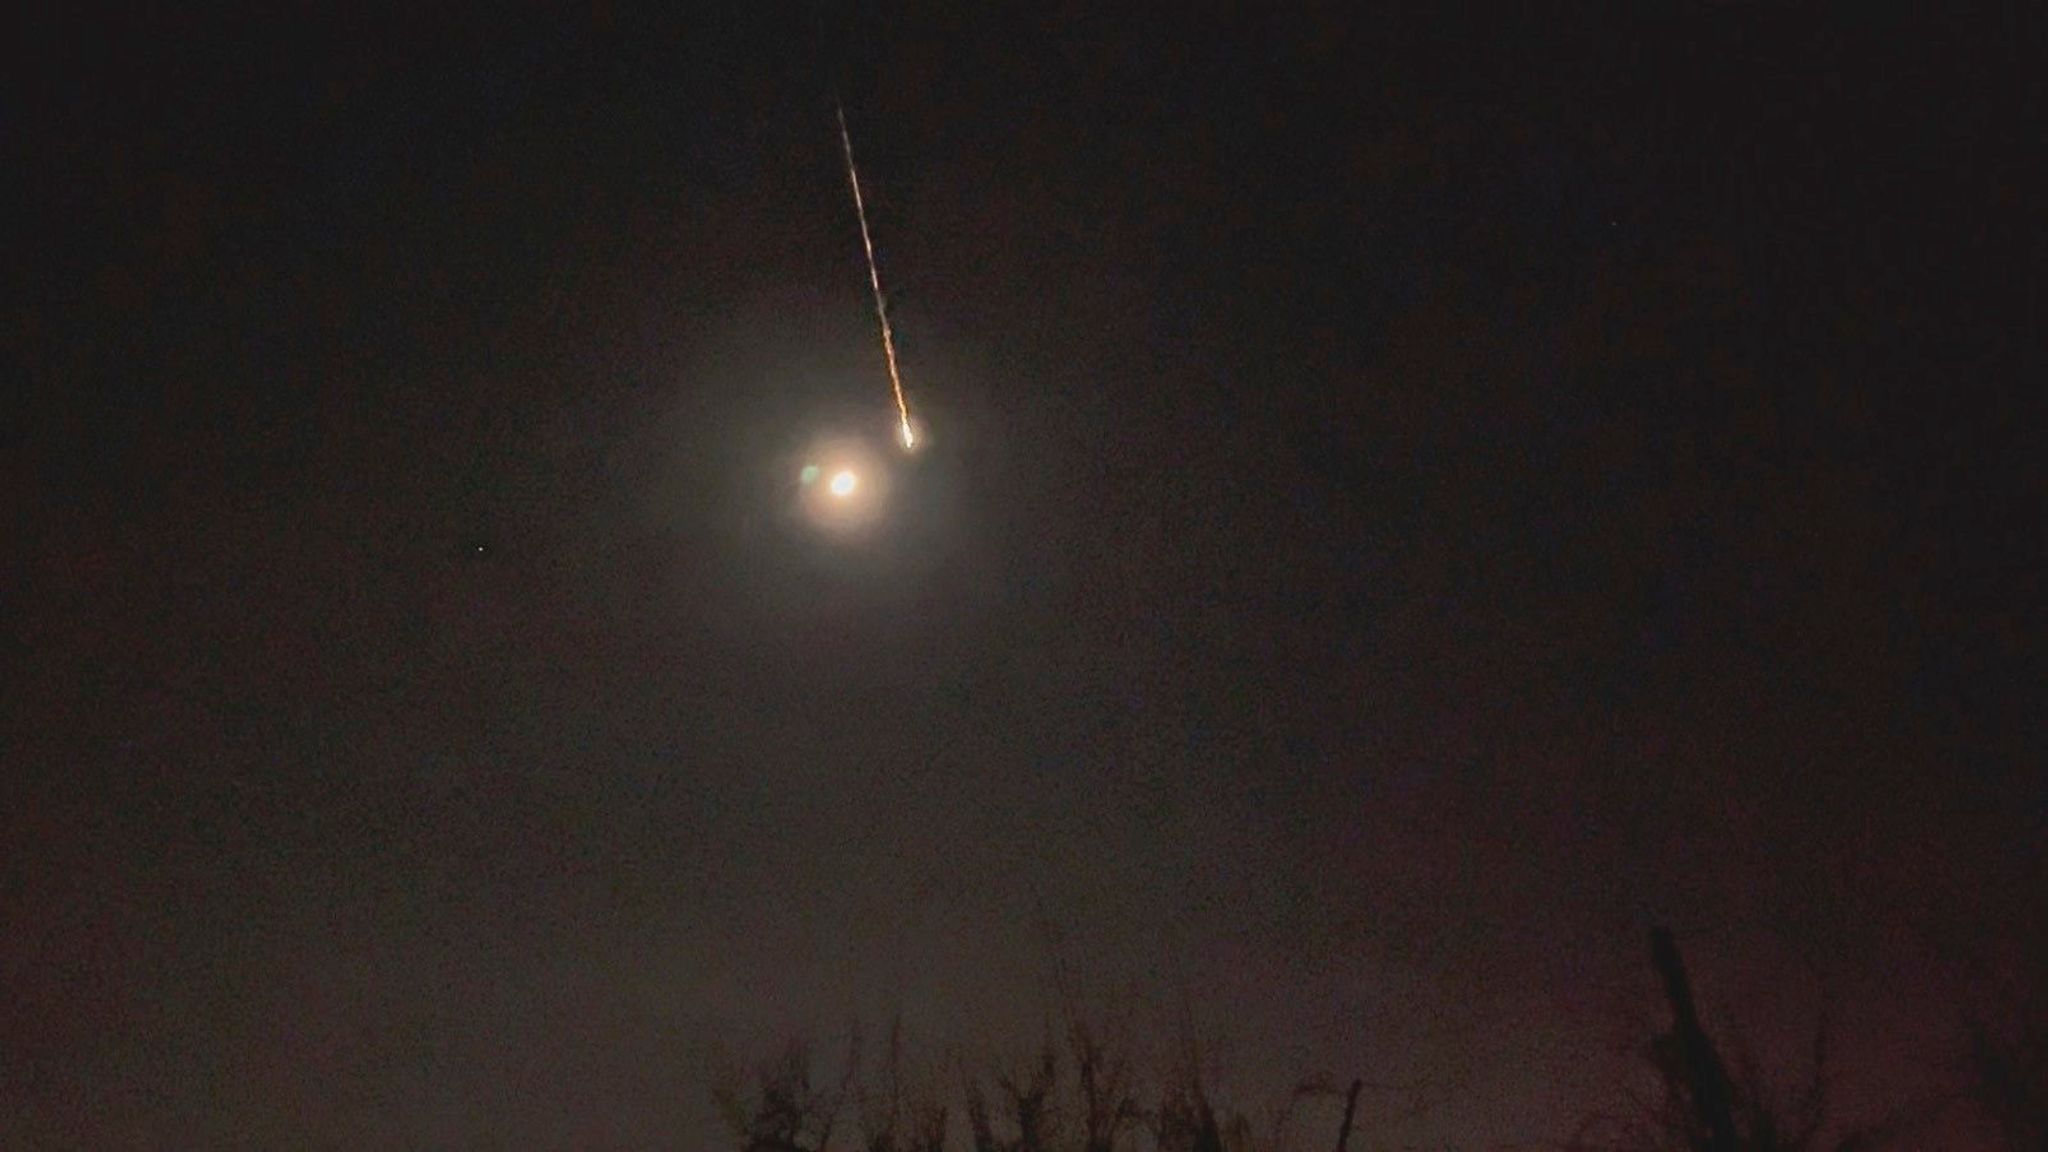 Ein Asteroid ist in der Nacht über Brandenburg beim Eintritt in die Atmosphäre verglüht.